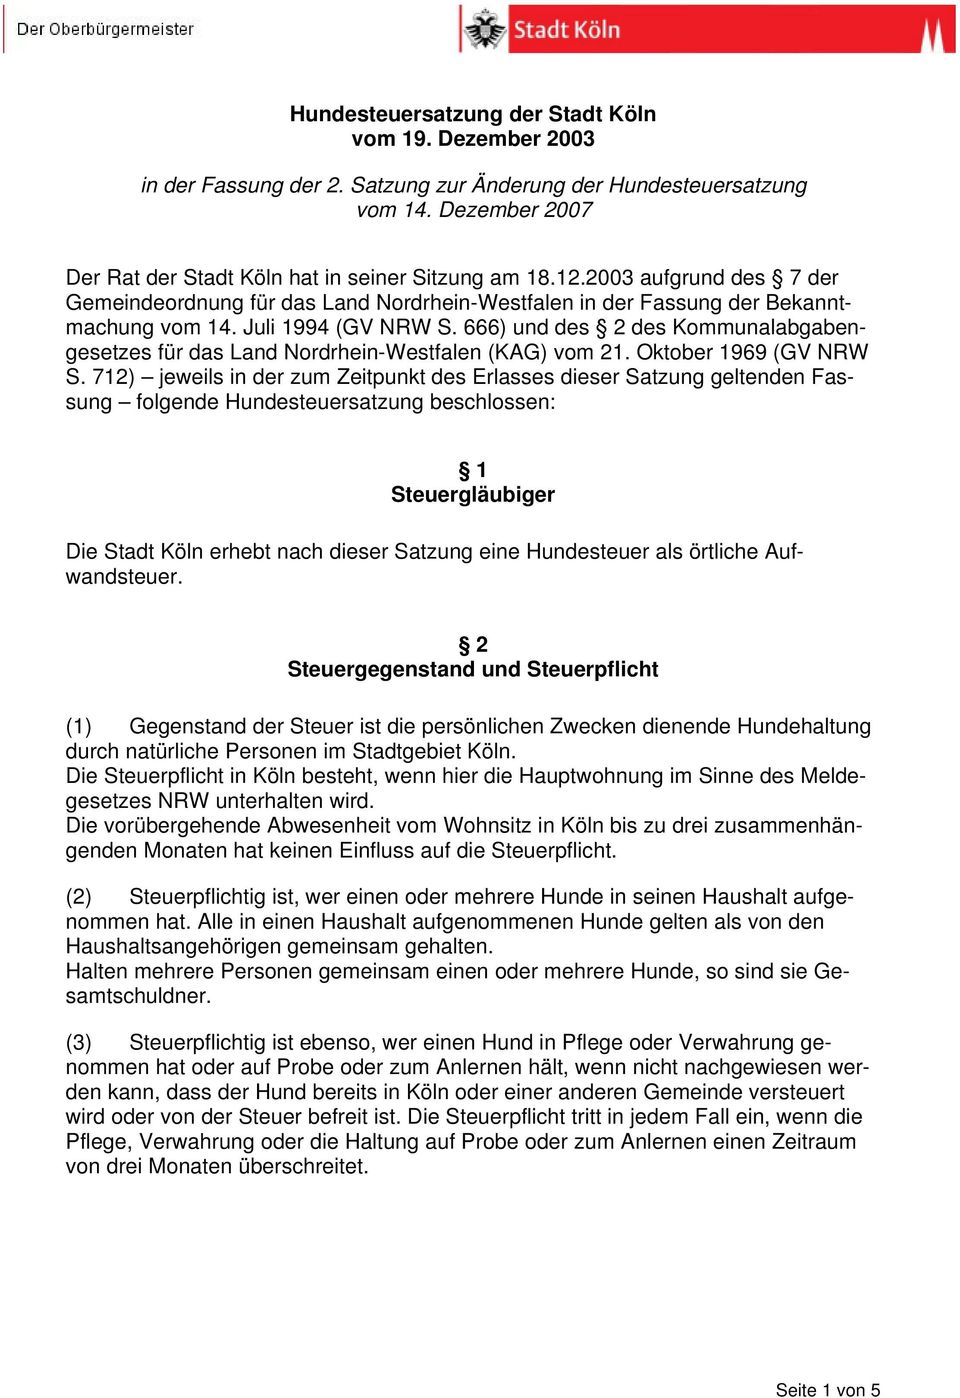 666) und des 2 des Kommunalabgabengesetzes für das Land Nordrhein-Westfalen (KAG) vom 21. Oktober 1969 (GV NRW S.